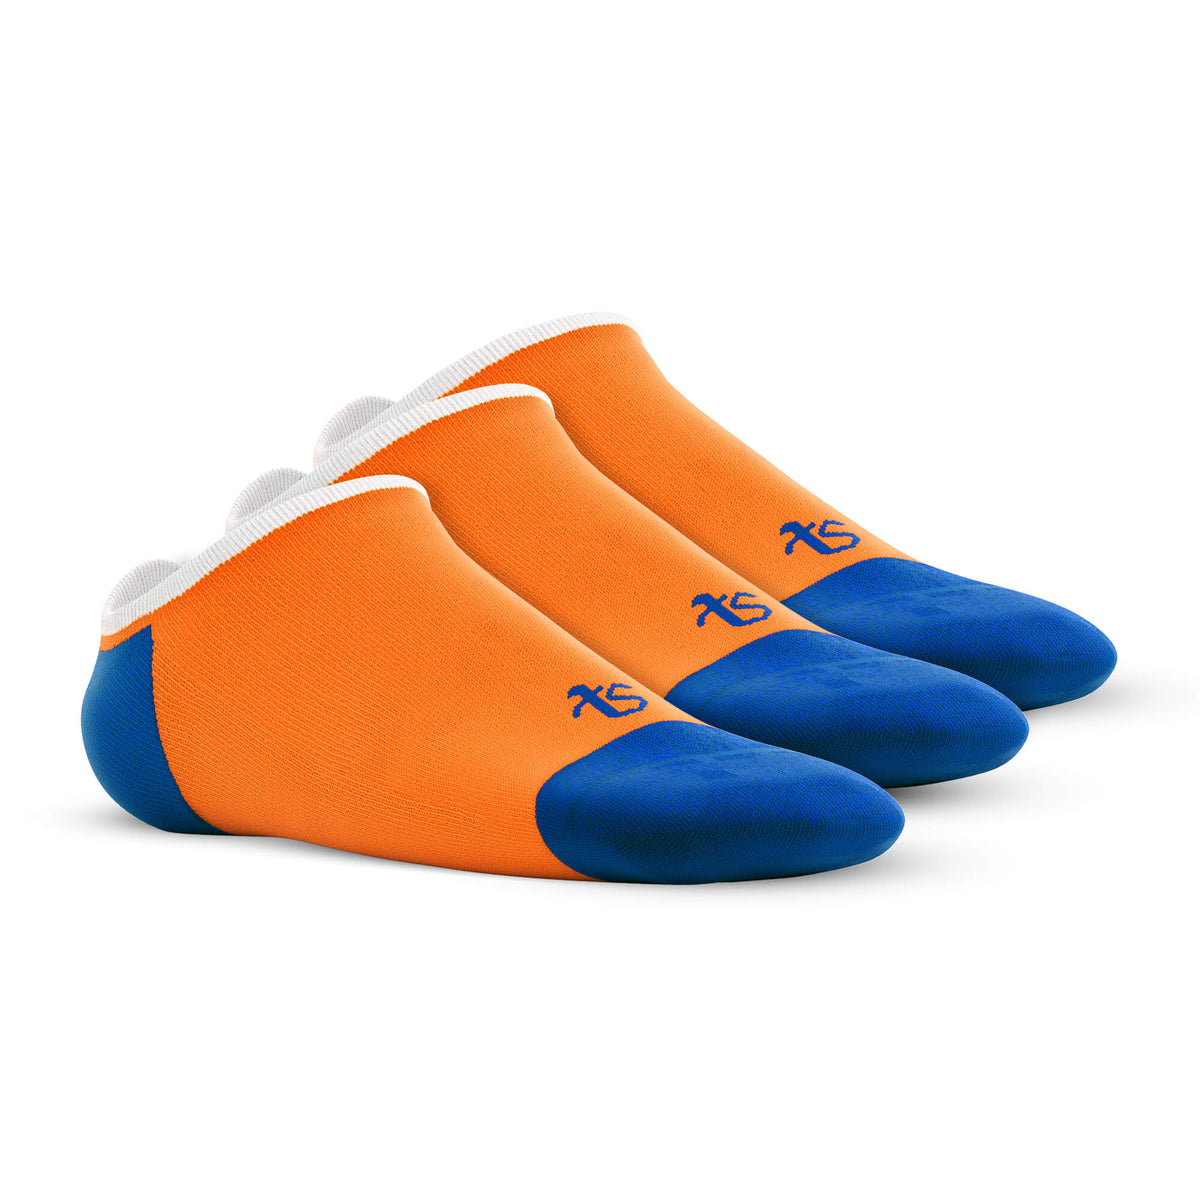 Loafer – See me – Orange, Royal Blue, White – Set of 3